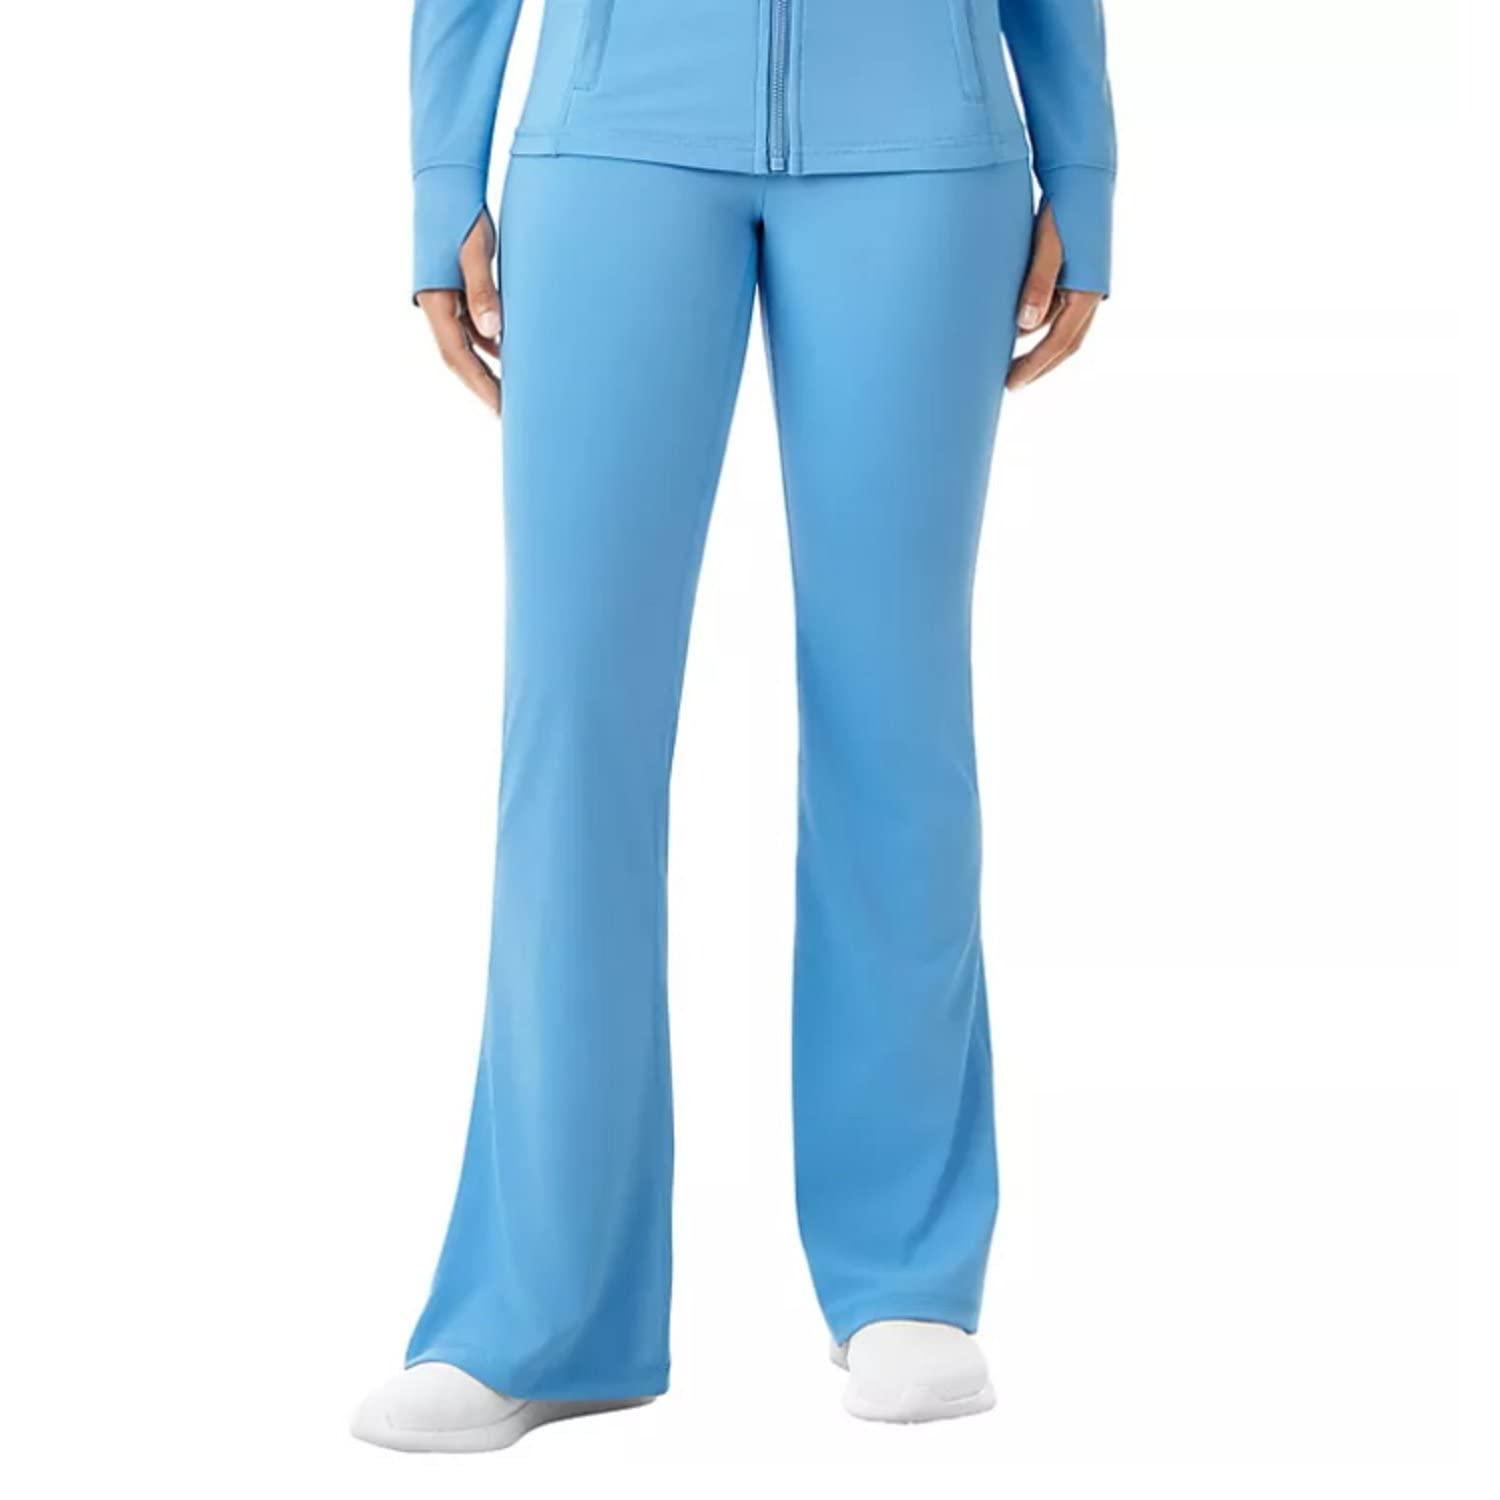  Member's Mark Women's Everyday Flare Yoga Pant, Blue